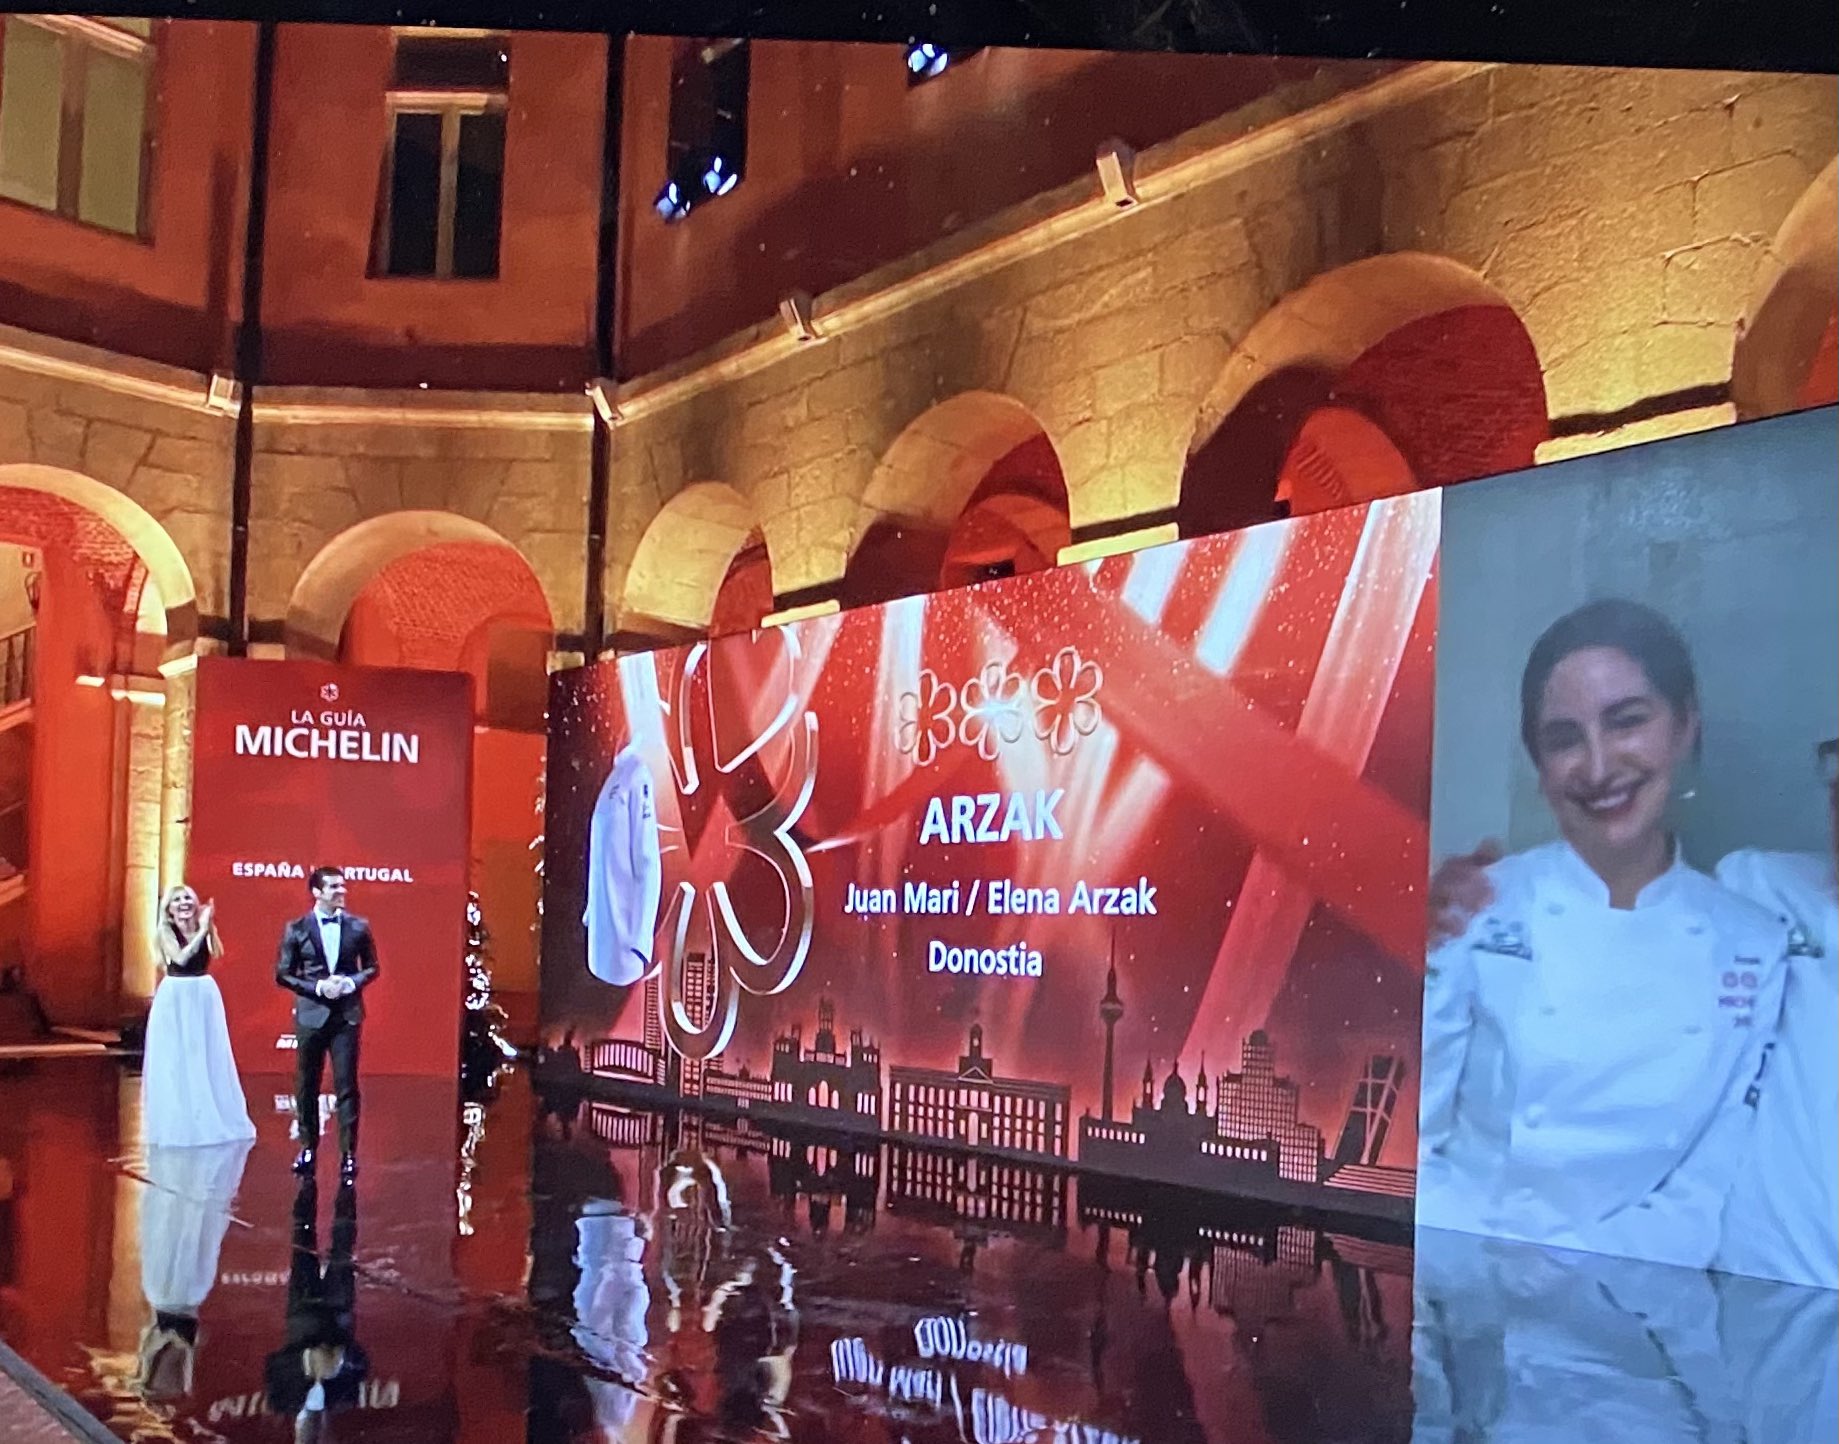 Gala de las Estrellas Michelin esta noche en Madrid. Foto vía twitter (Arzak)